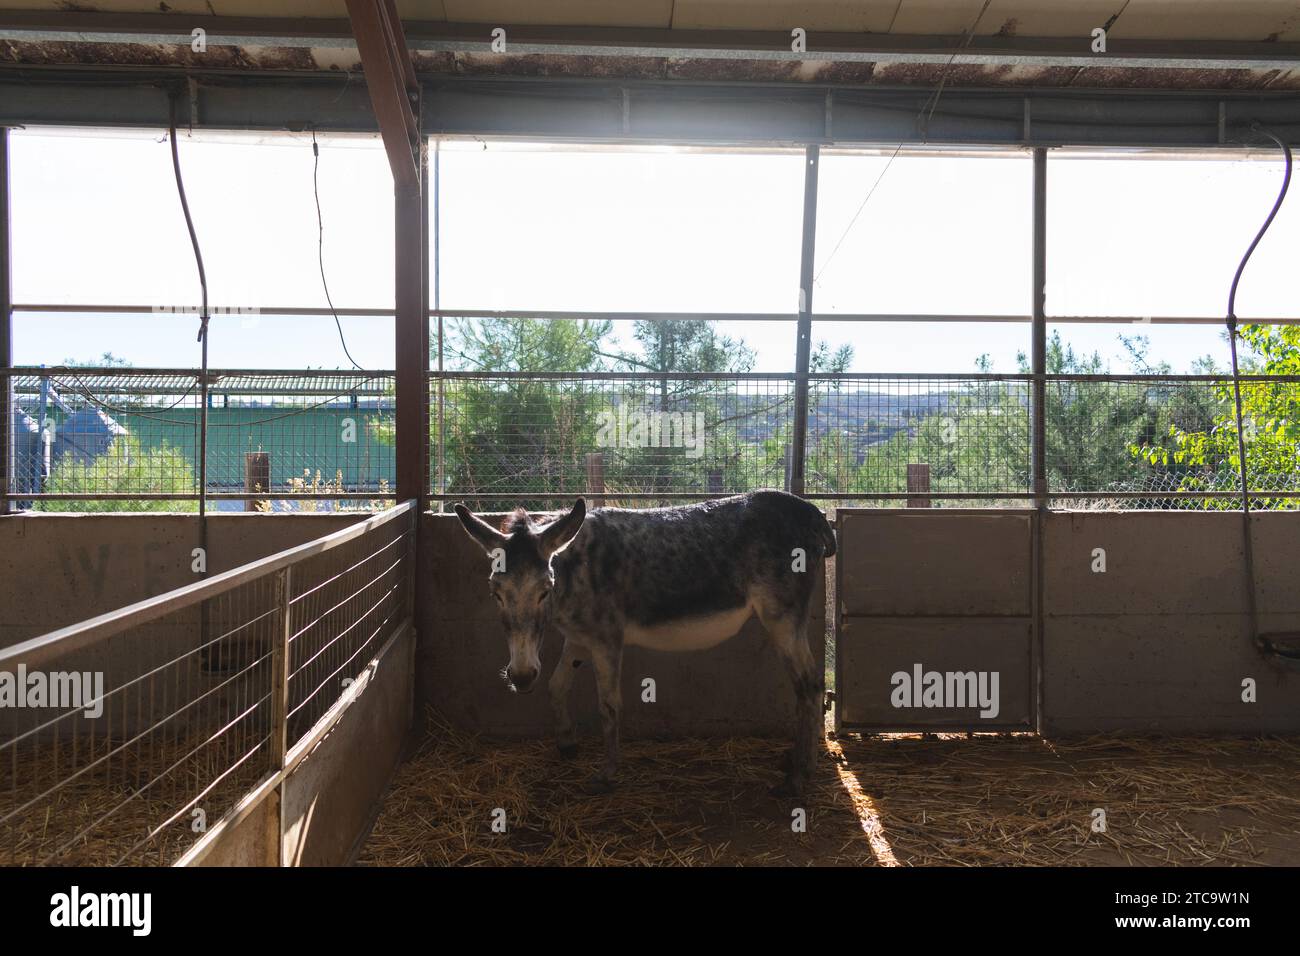 Un jeune bovin est photographié dans un enclos sécurisé à l'intérieur d'une grange, regardant vers la caméra Banque D'Images